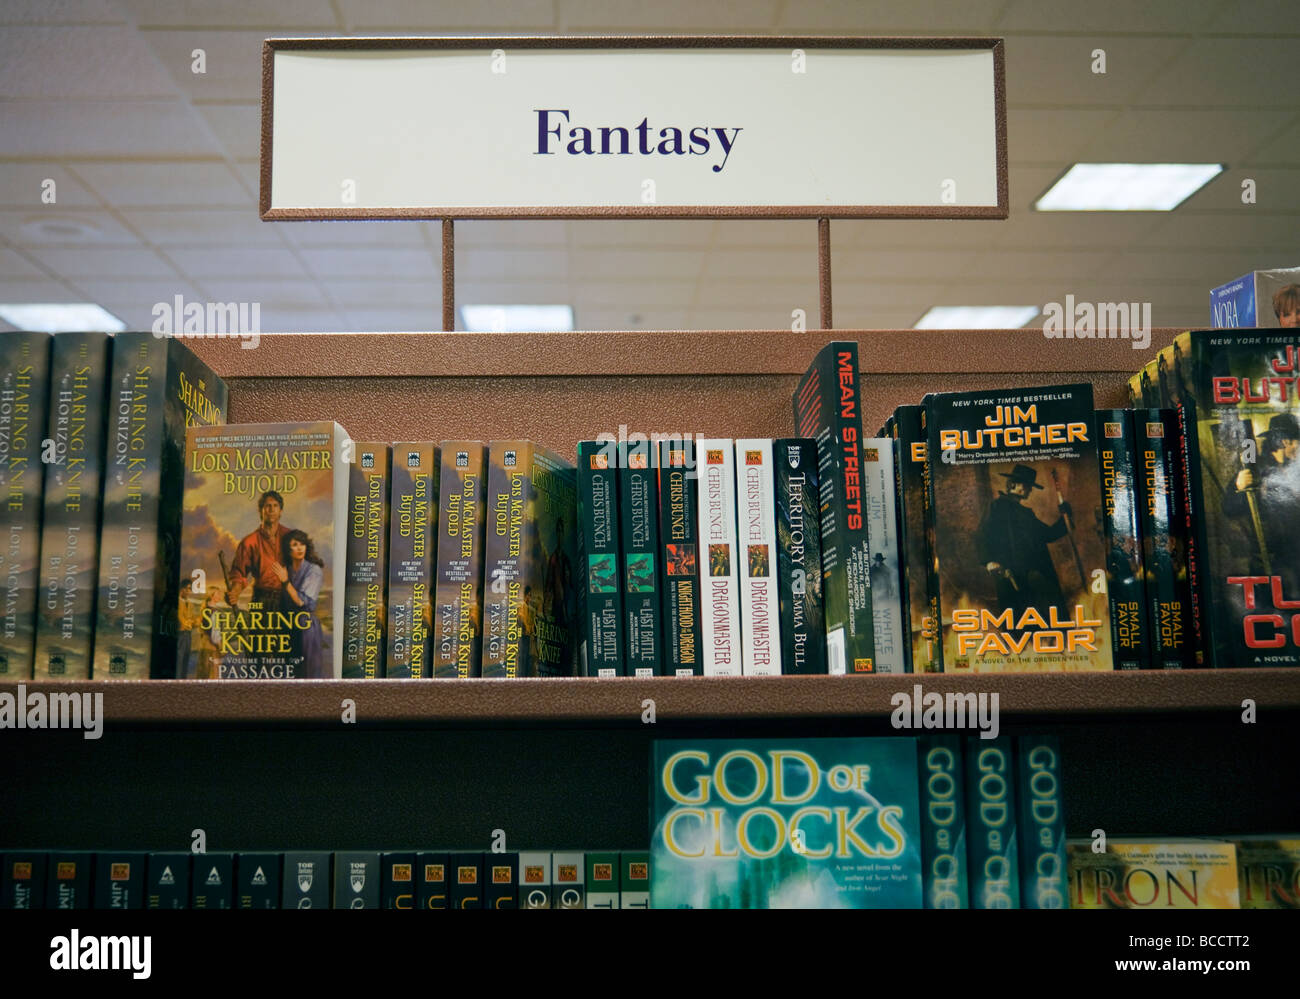 Fantasy livres sur des étagères, la librairie Chapters, Coquitlam, BC, Canada Banque D'Images